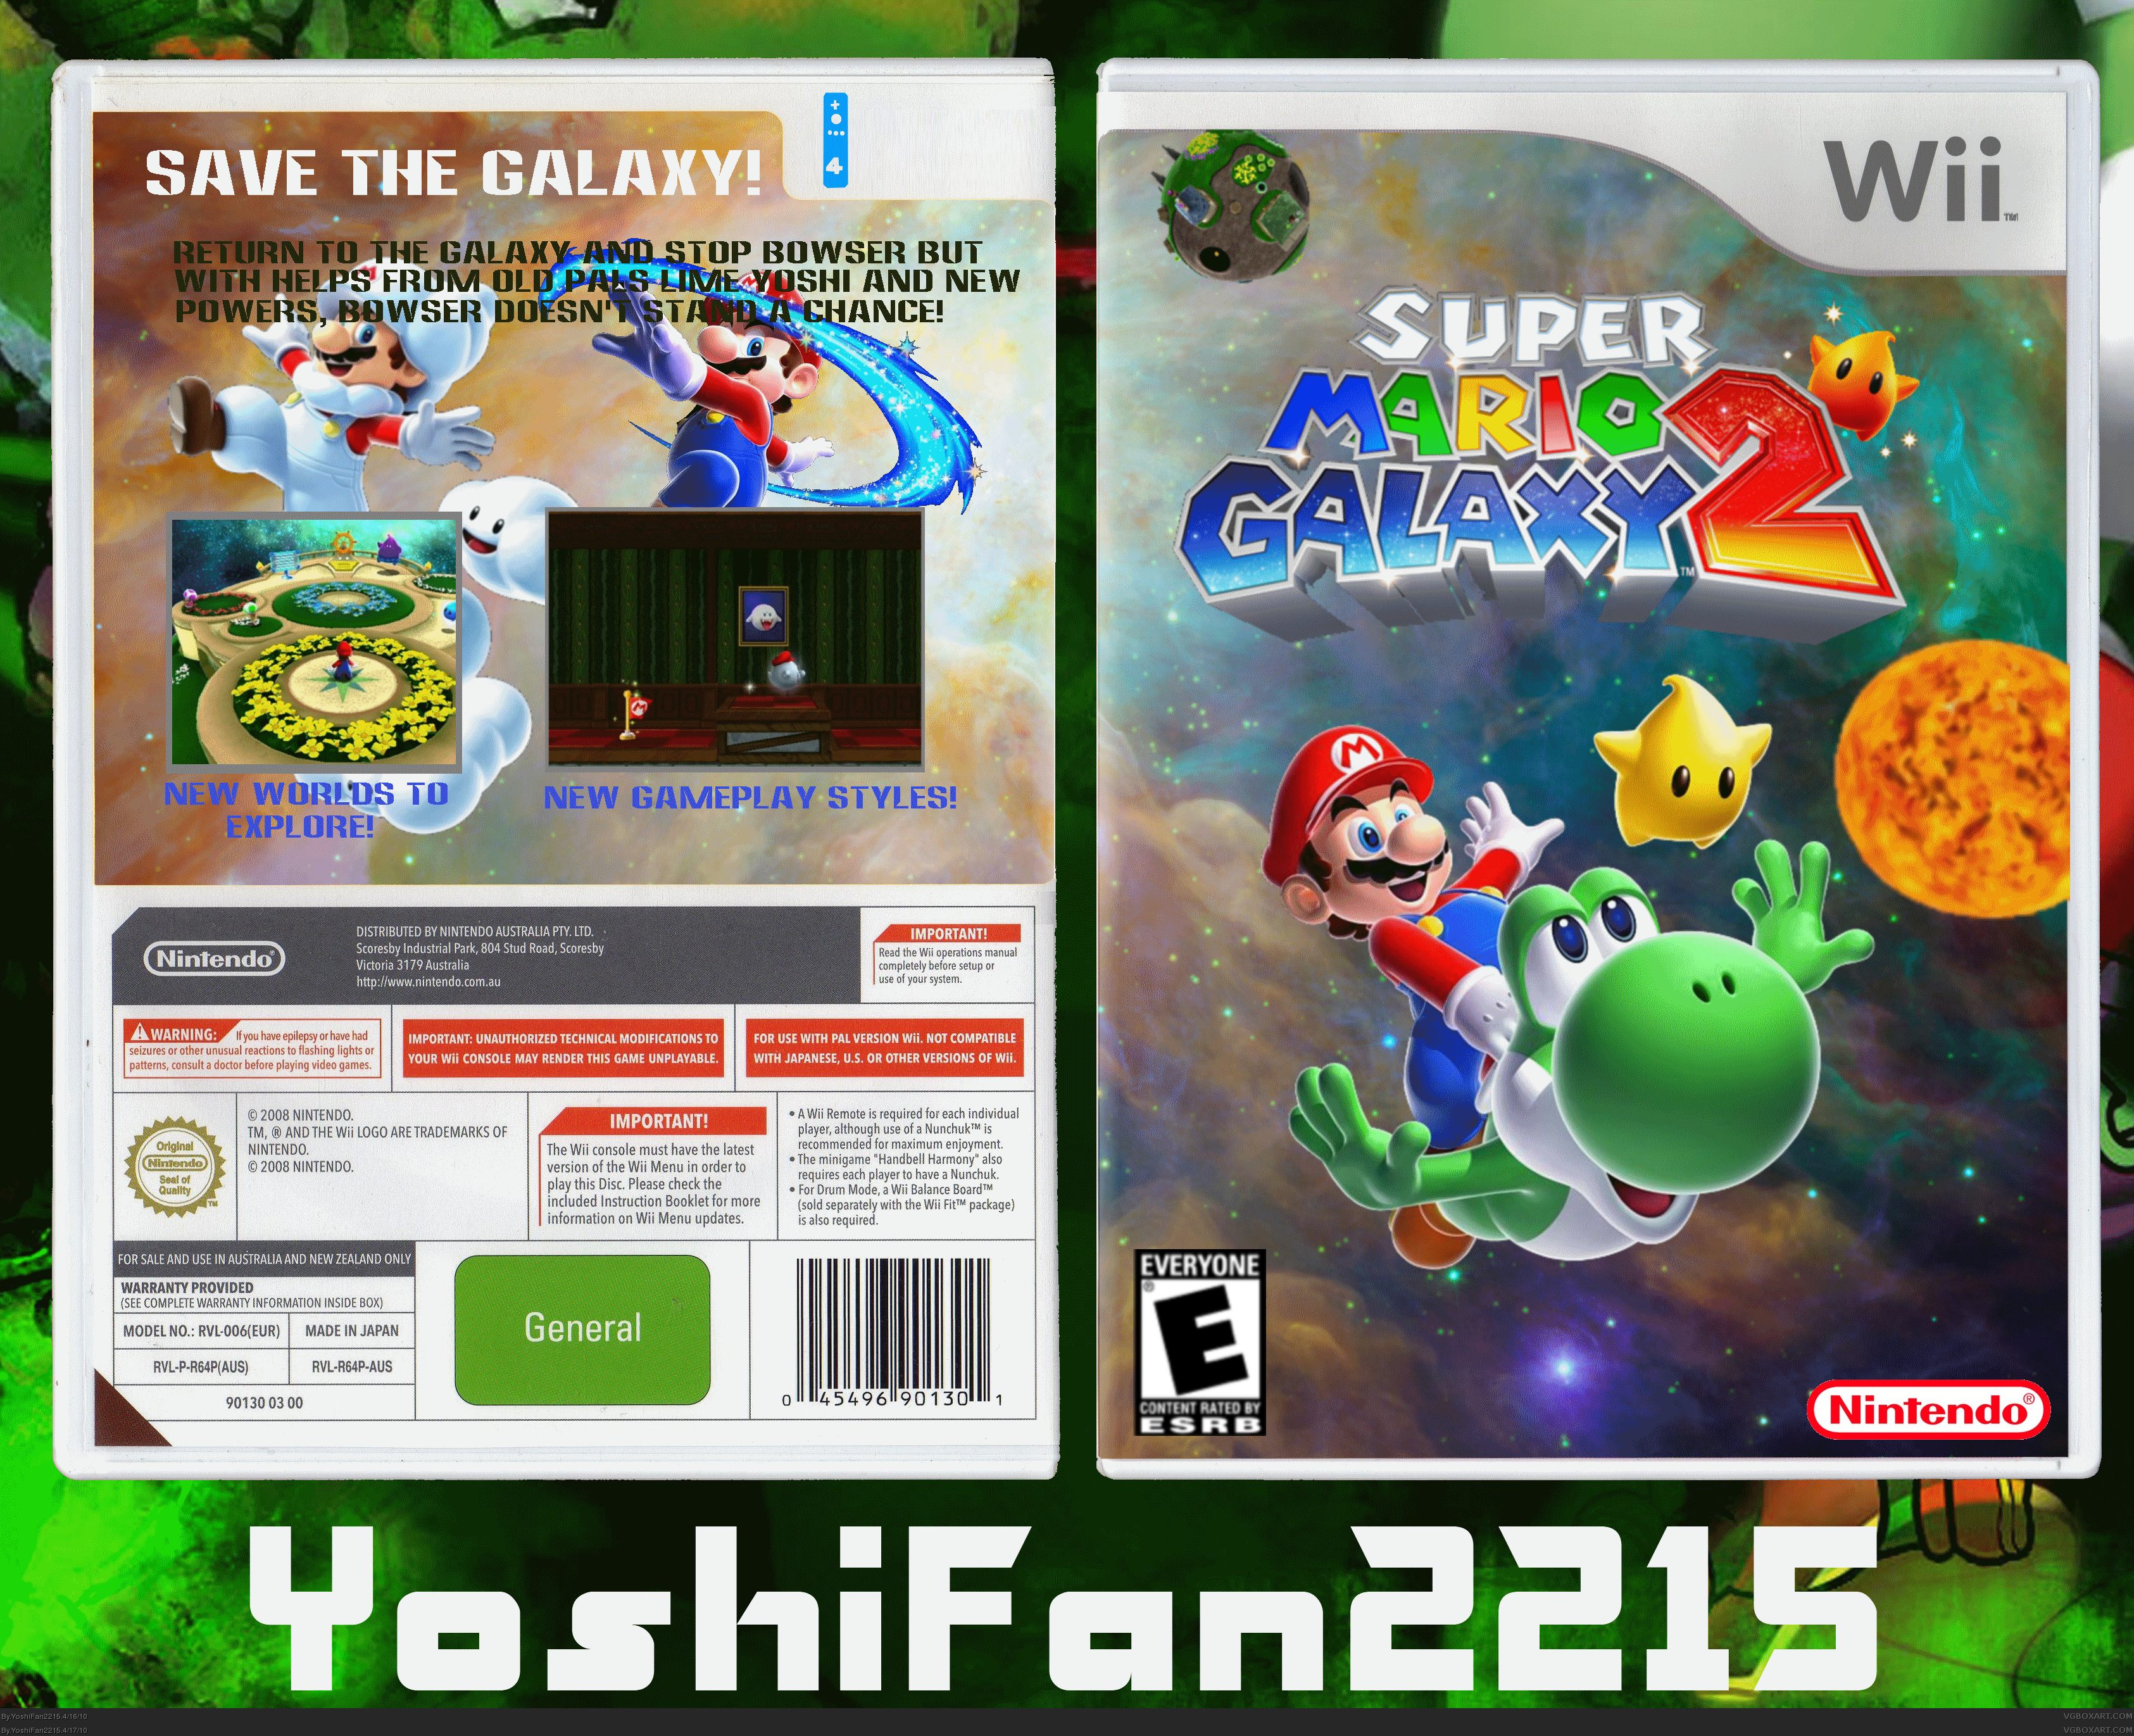 Super Mario Galaxy 2 box cover